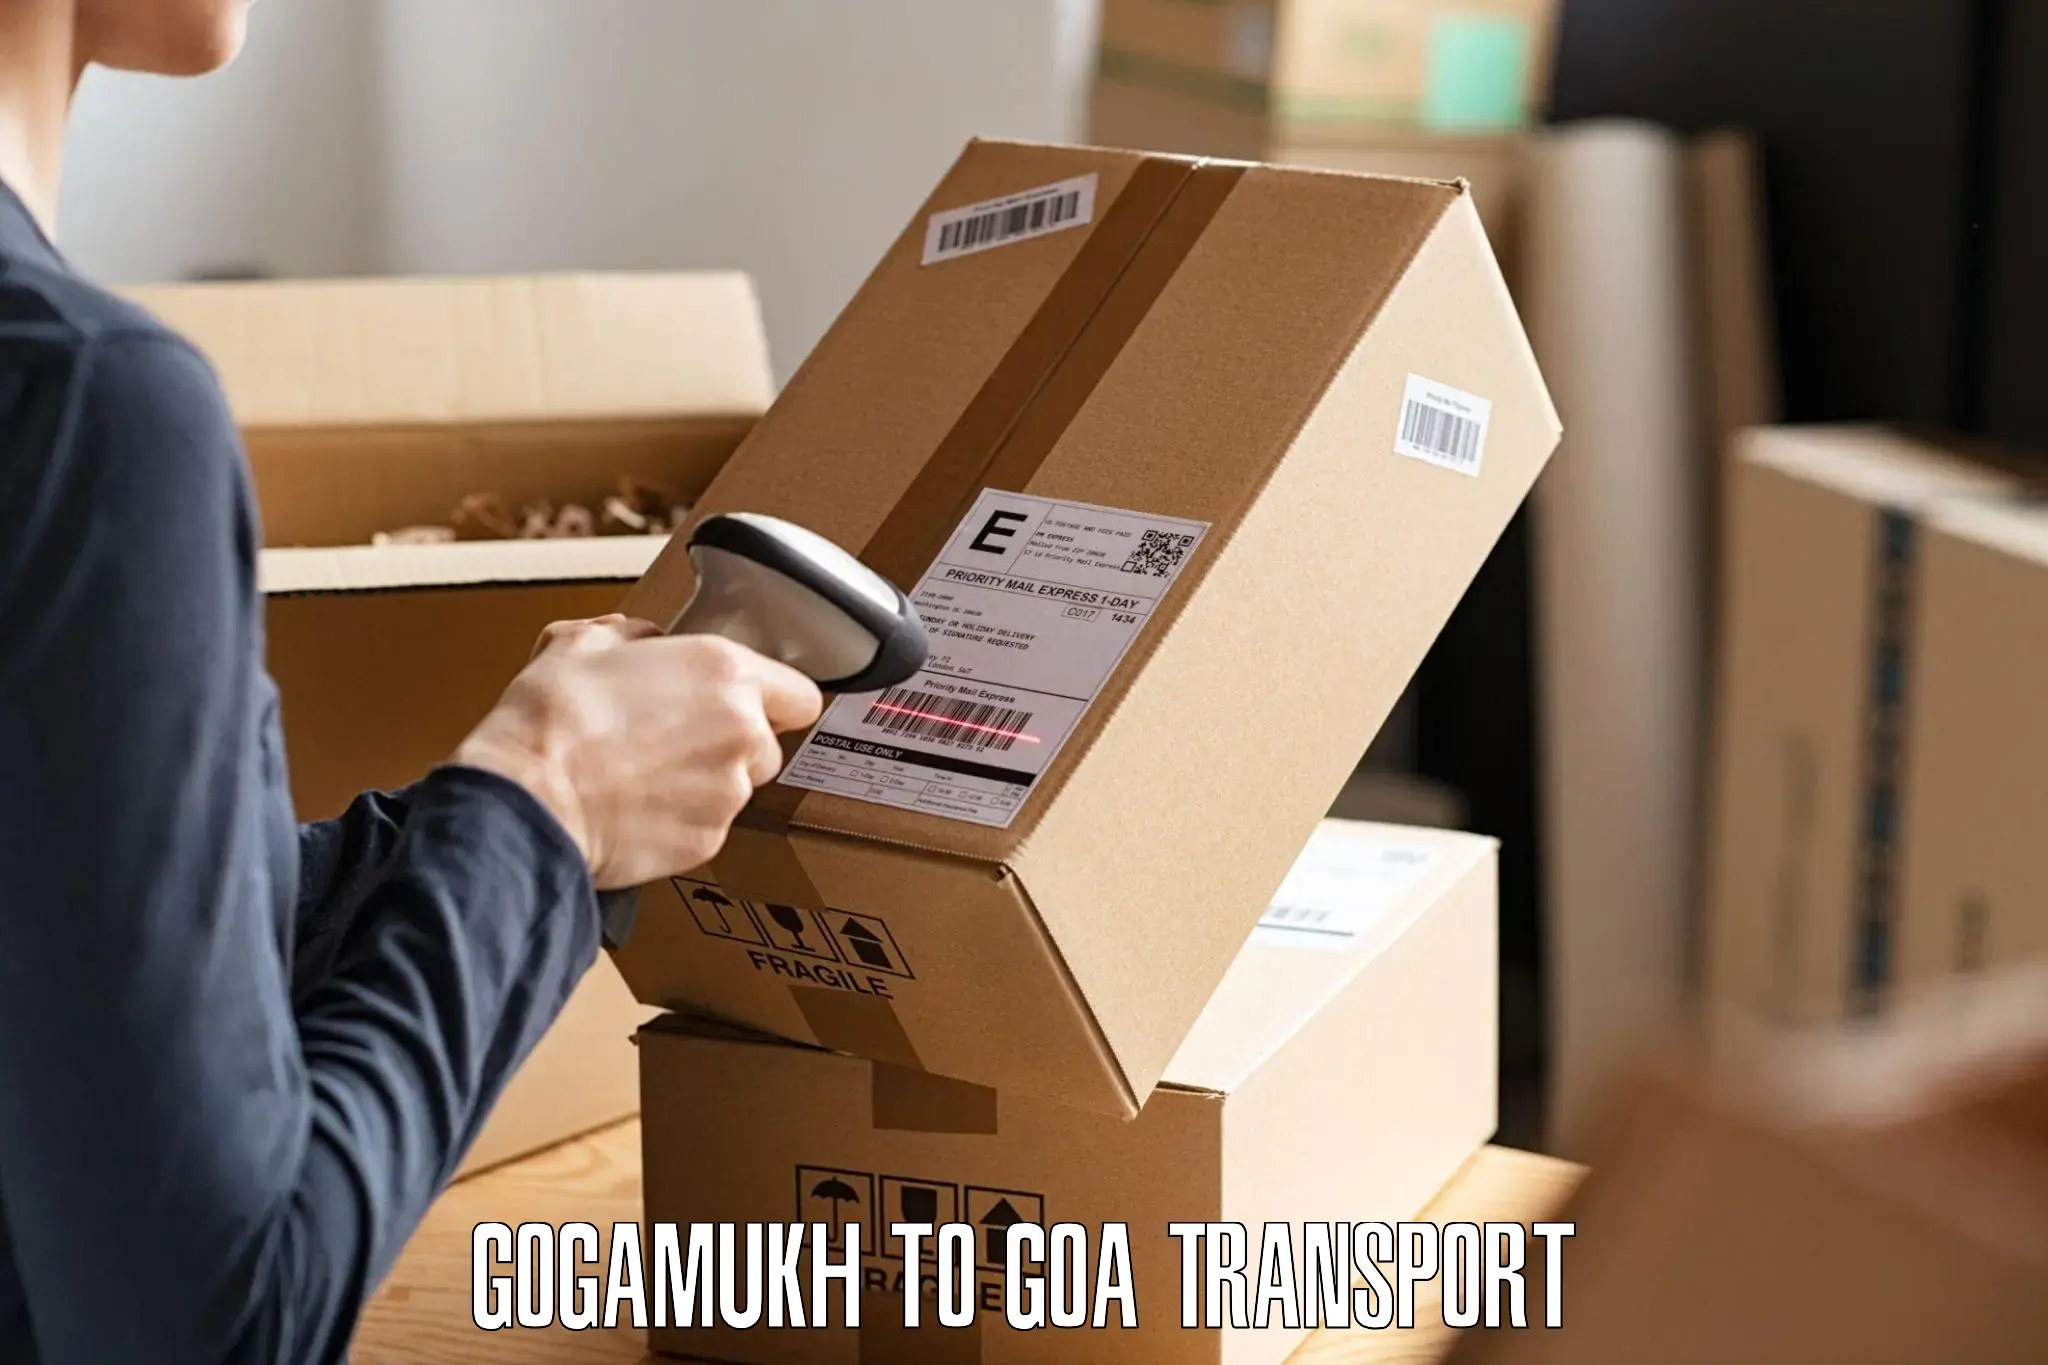 Cargo train transport services Gogamukh to Canacona